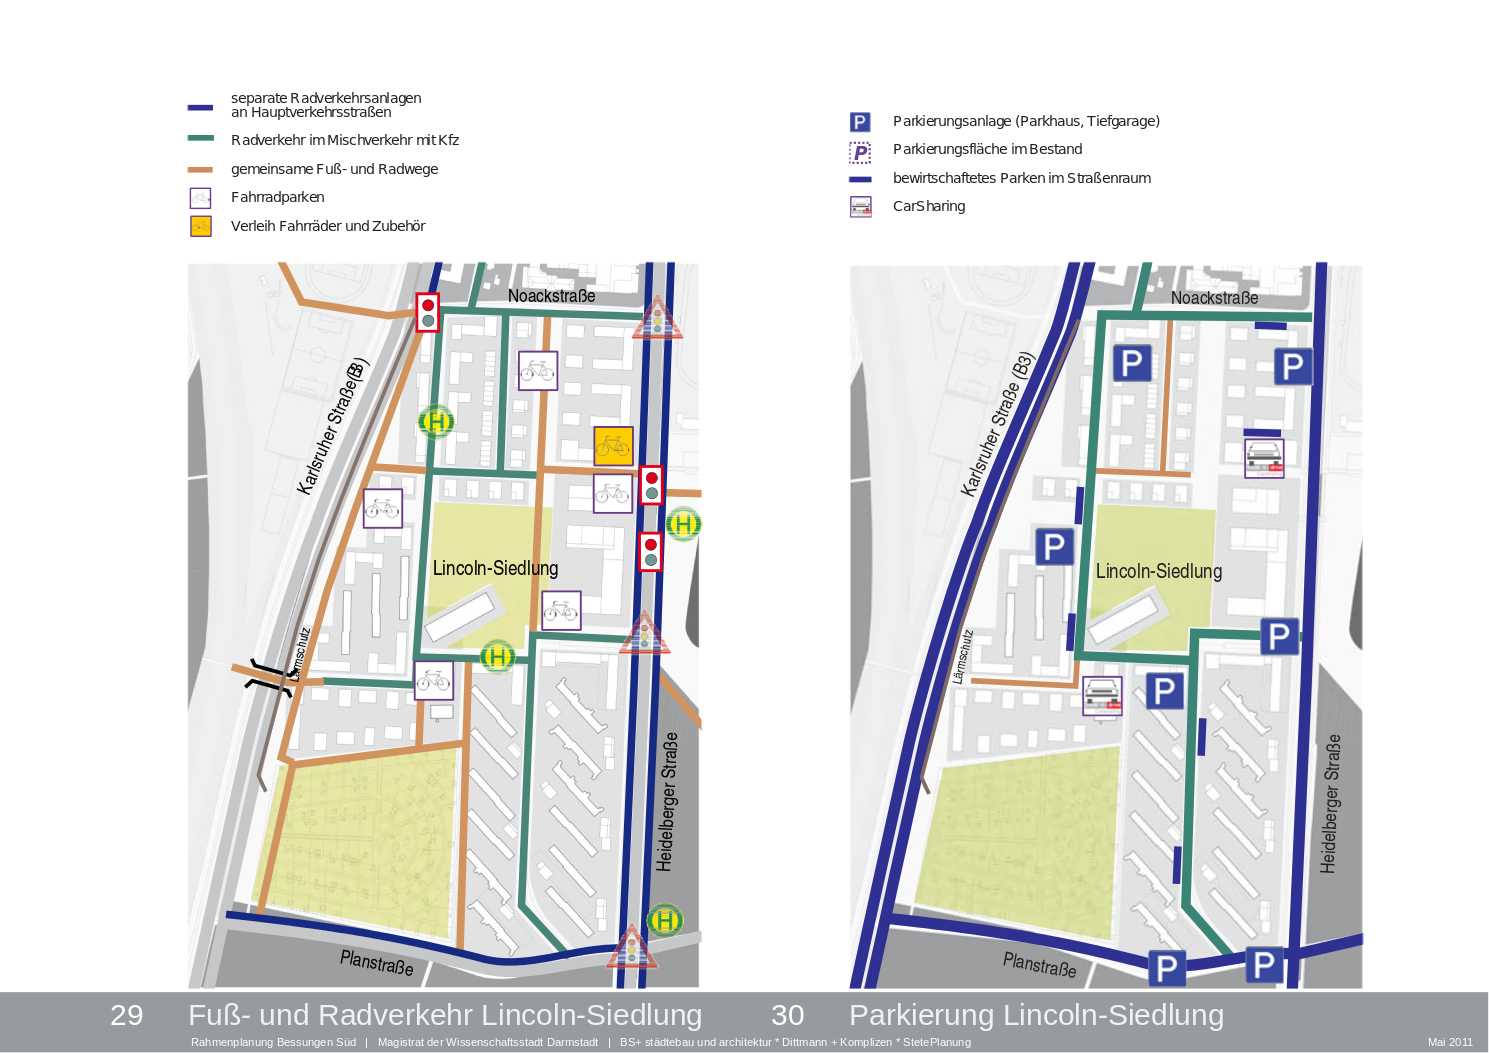 Mobilitätskonzept Lincolnsiedlung. Auszug aus dem Rahmenplan. Quelle: Stadt Darmstadt